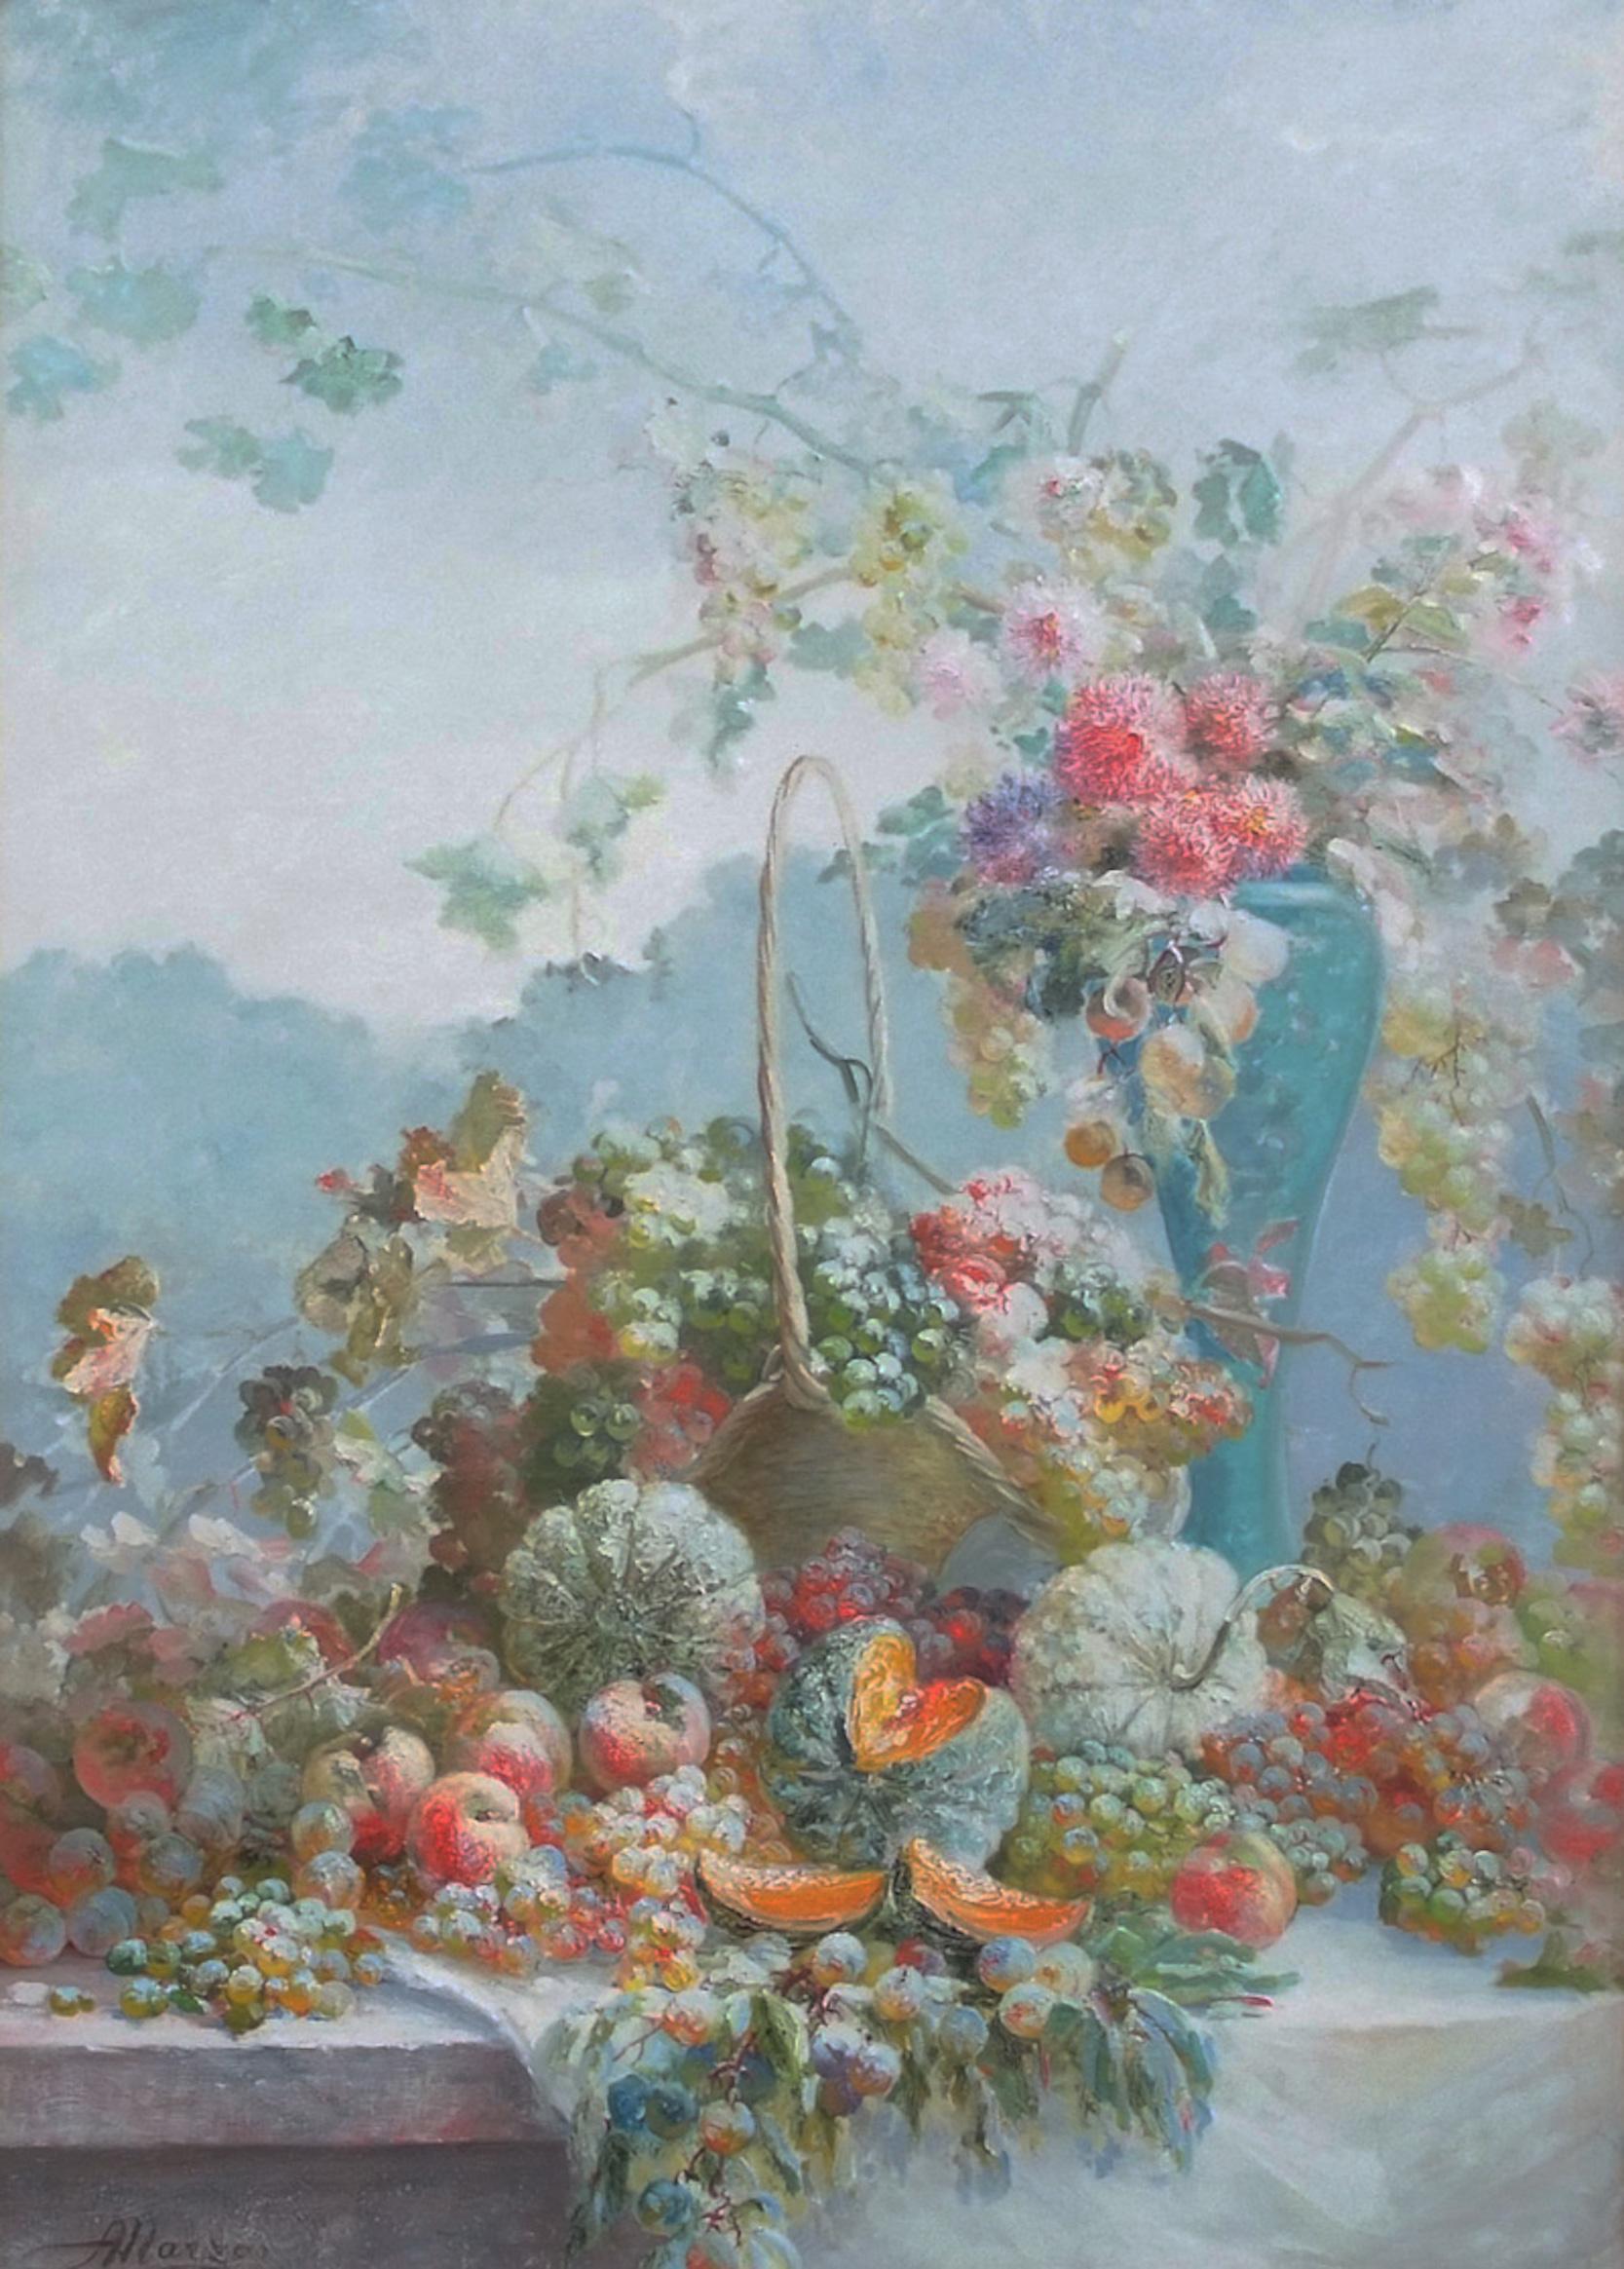 Großes großes Gemälde Frühlingsarrangement Früchte und Blumen 1907 (Post-Impressionismus), Painting, von MARZO Antoine  